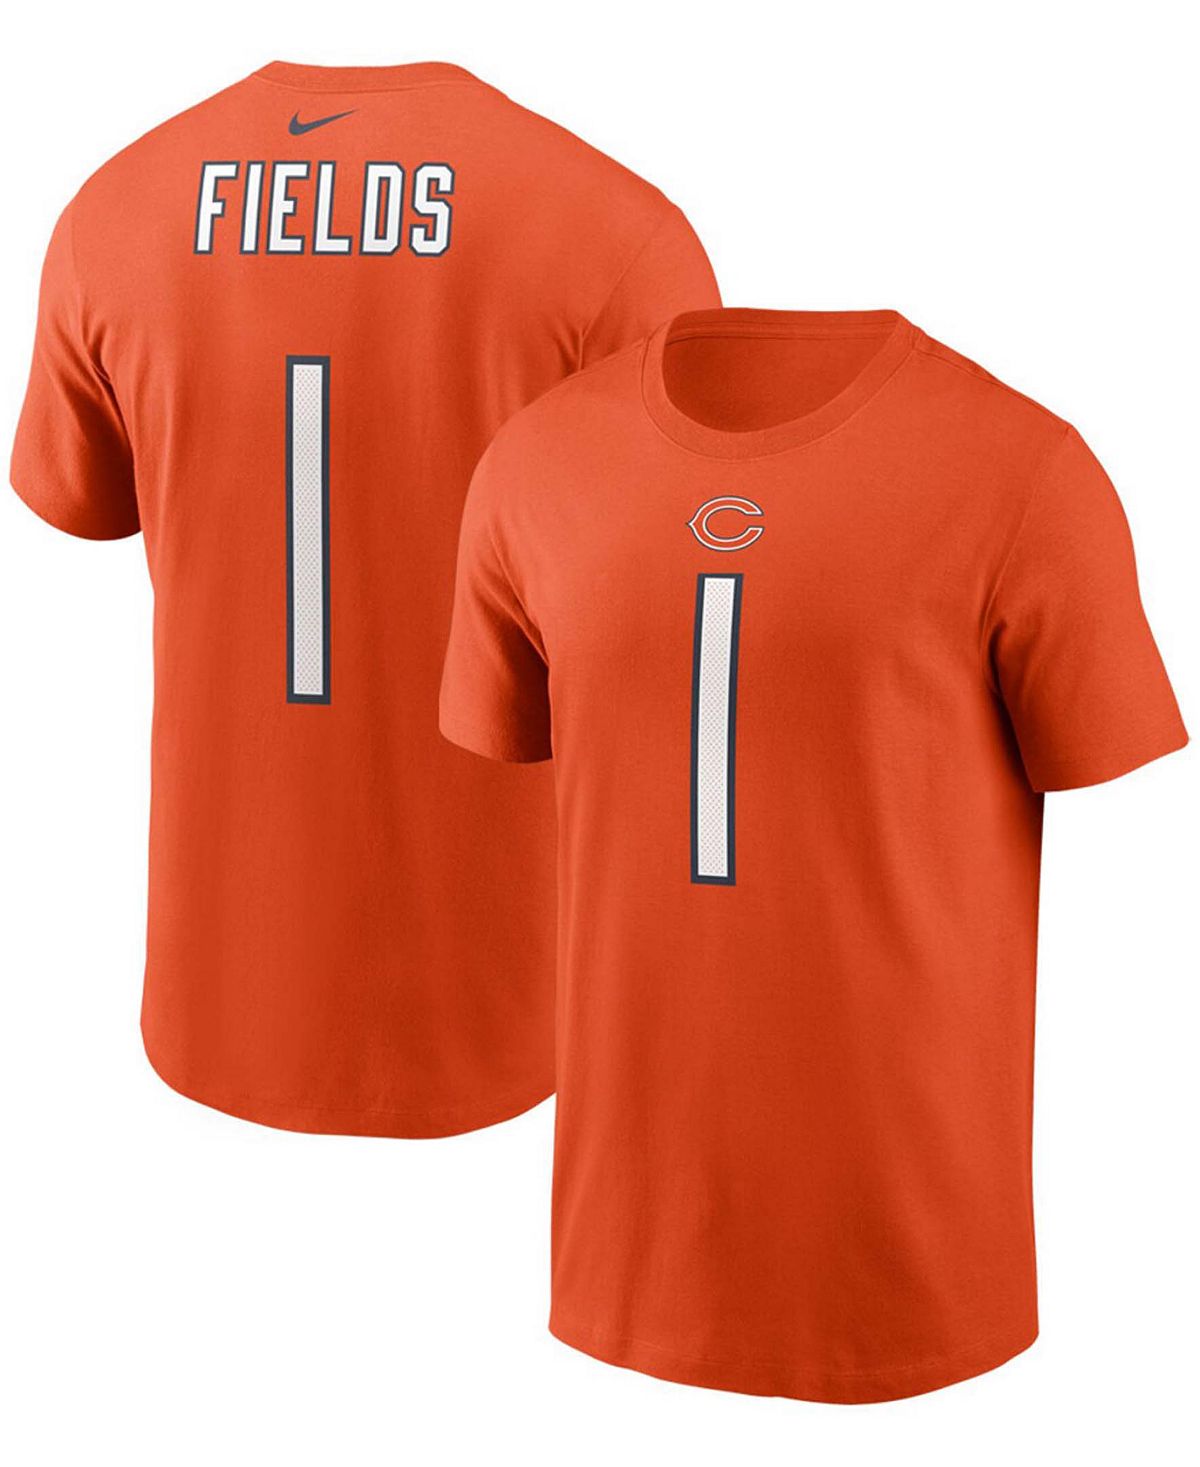 Мужская футболка Джастина Филдса Orange Chicago Bears с именем и номером игрока драфта НФЛ 2021 года в первом раунде Nike